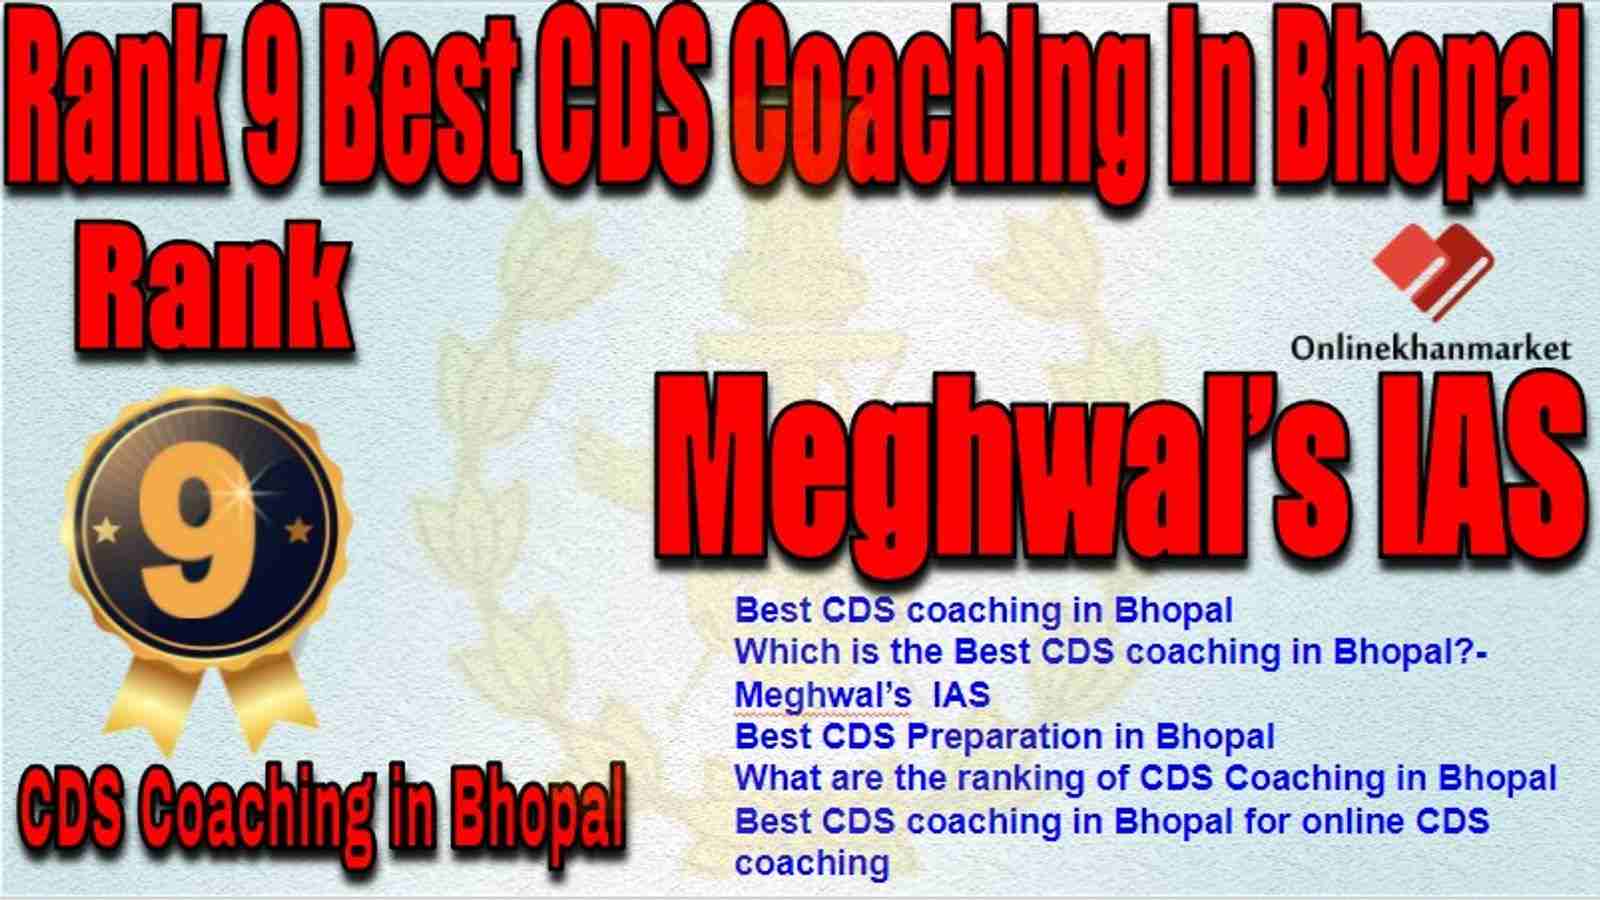 Rank 9 Best CDS Coaching in bhopal